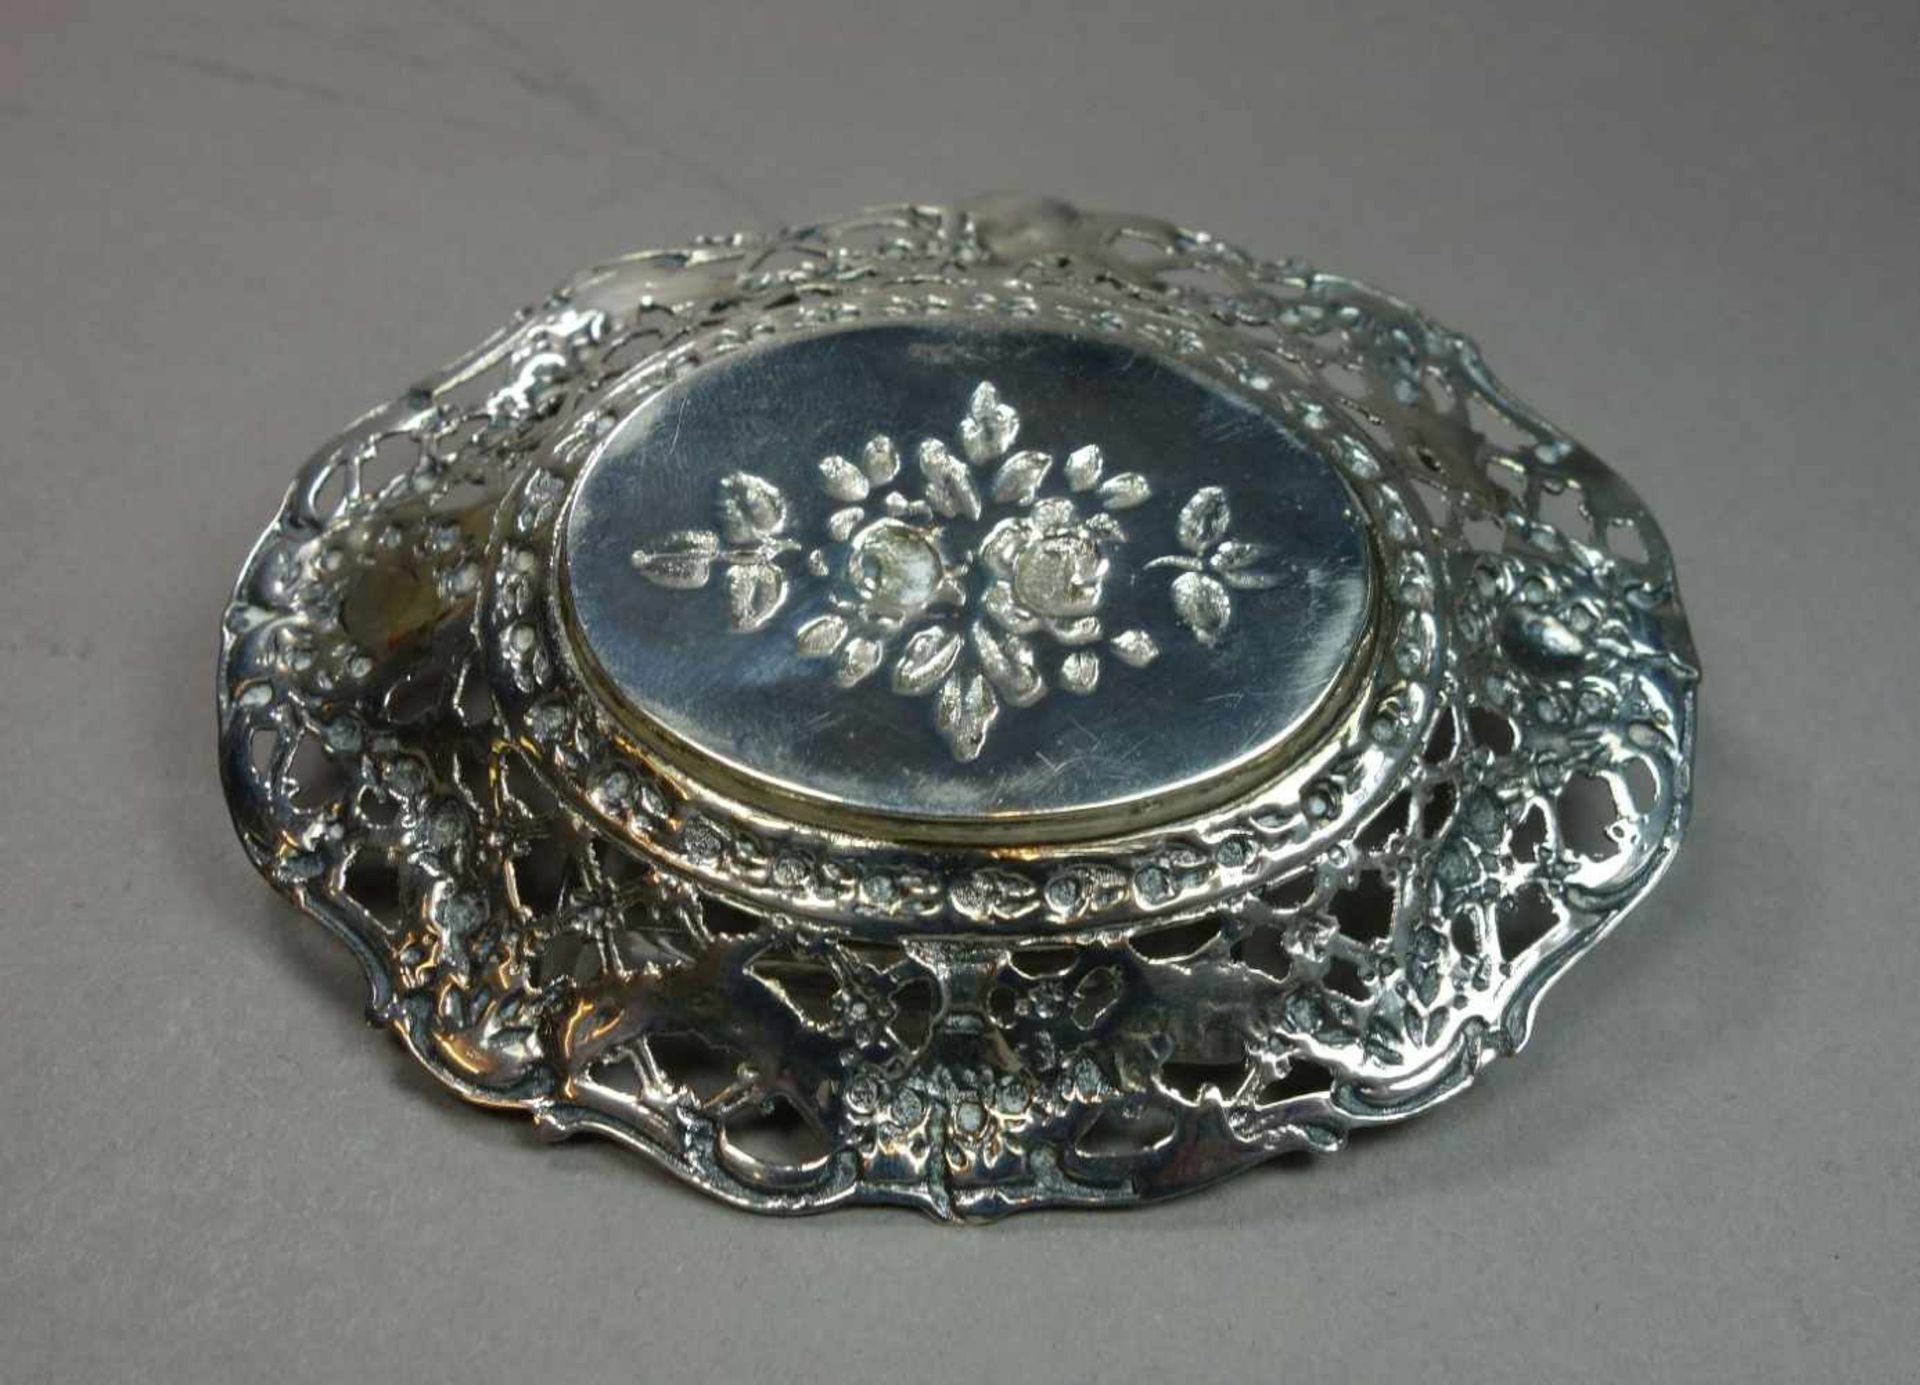 SCHALE / DURCHBRUCHSCHALE / KORBSCHALE / silver bowl, 800er Silber (41 g), gepunzt mit - Image 3 of 3